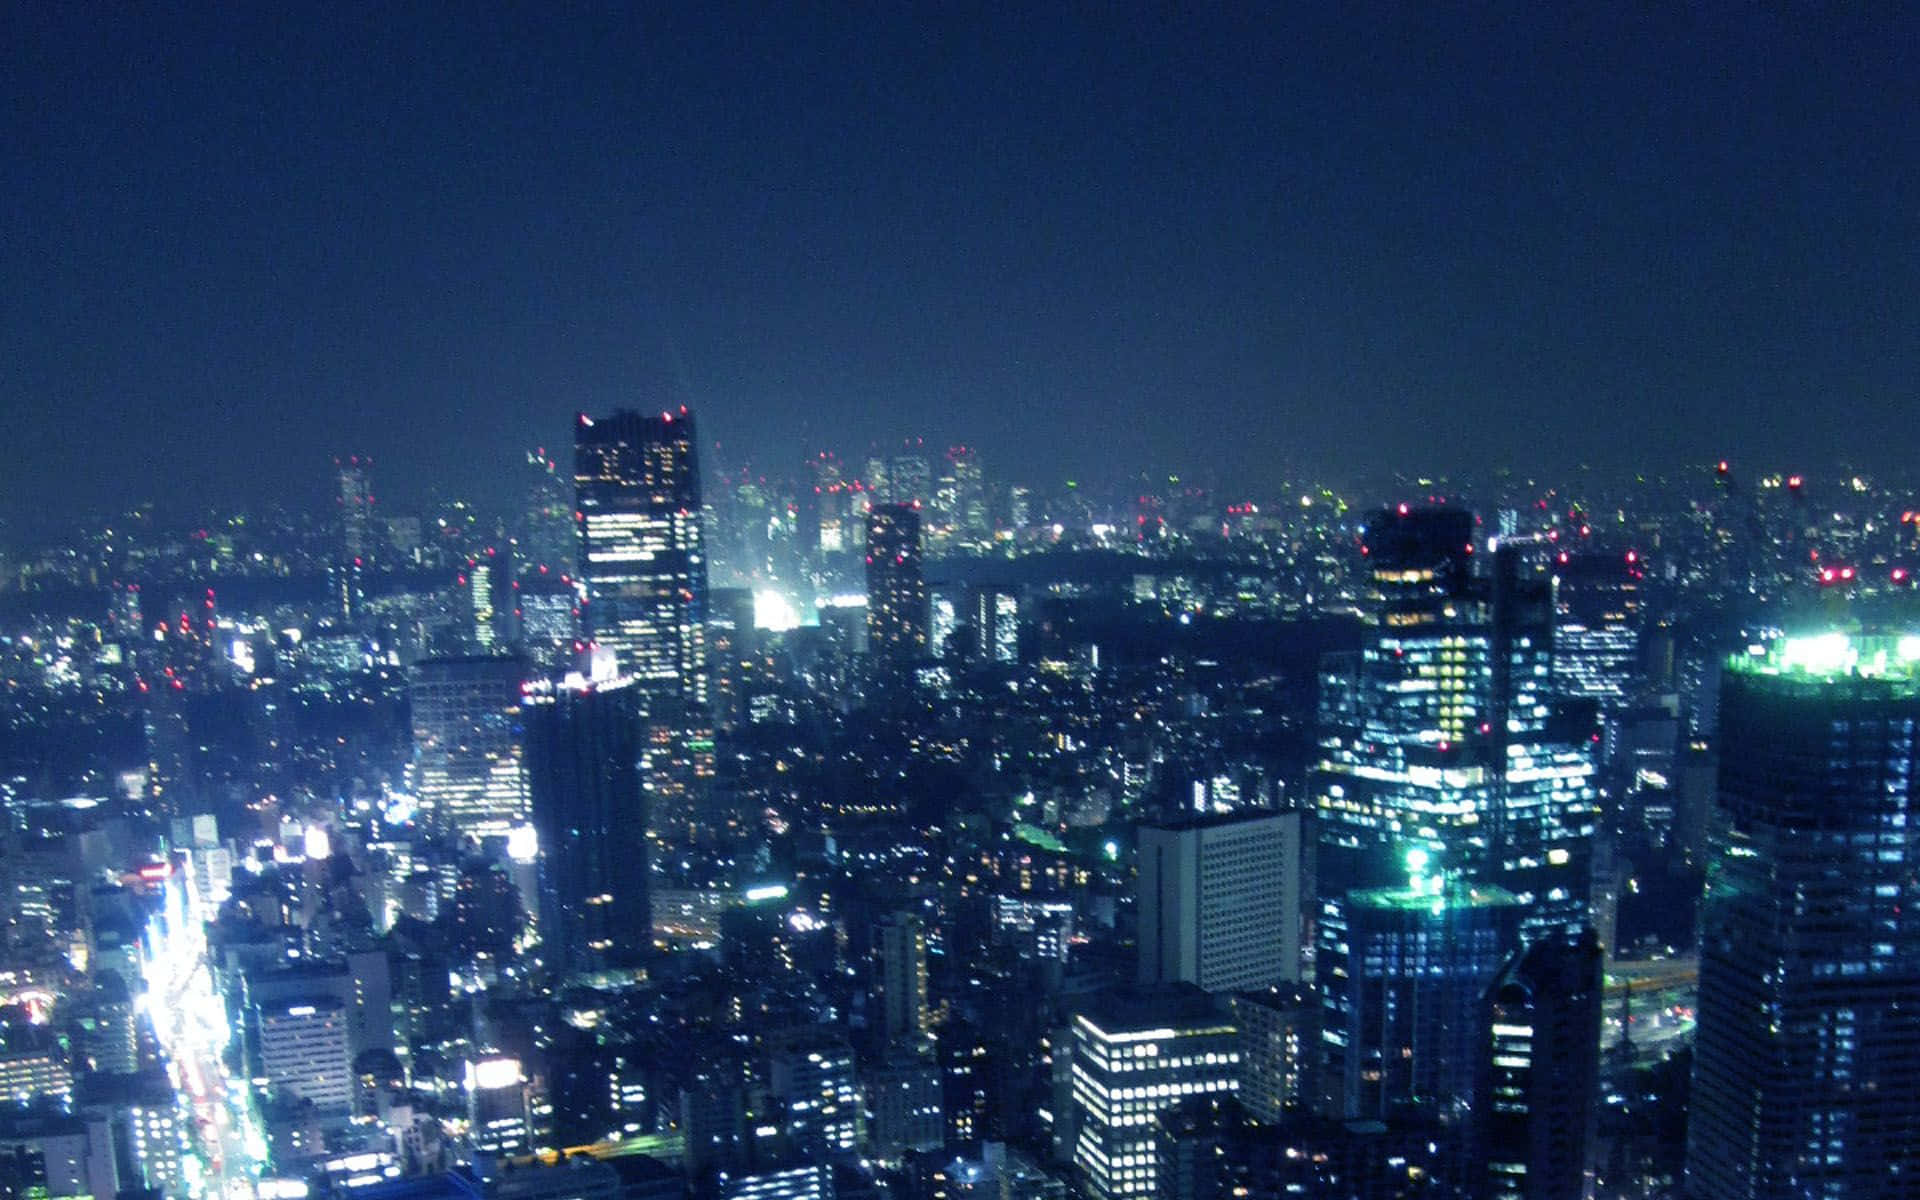 Hintergrundbildvon Tokyo - Eine Stadt Voller Licht